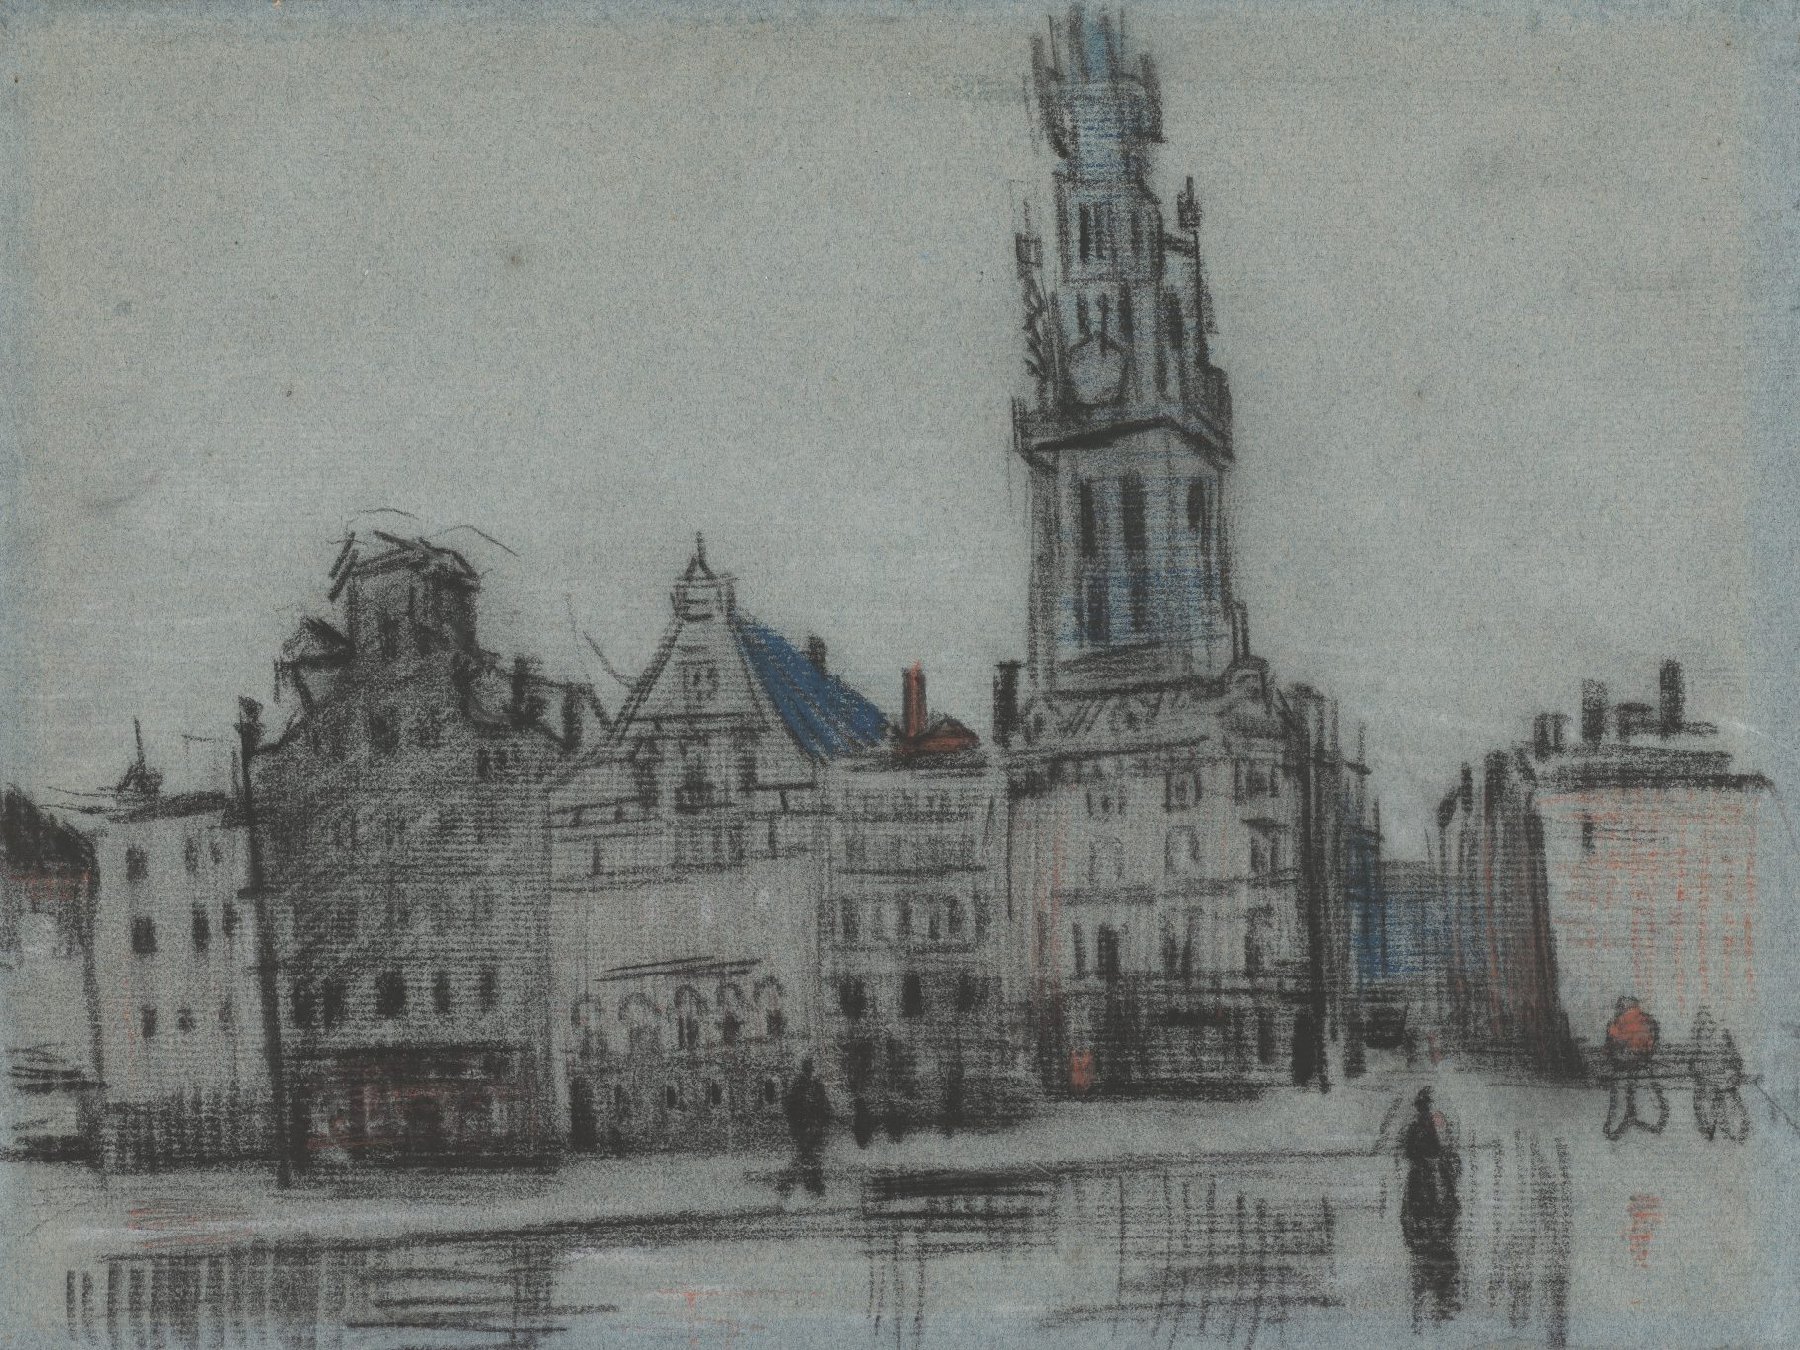 De Grote Markt Vincent van Gogh (1853 - 1890), Antwerpen, december 1885